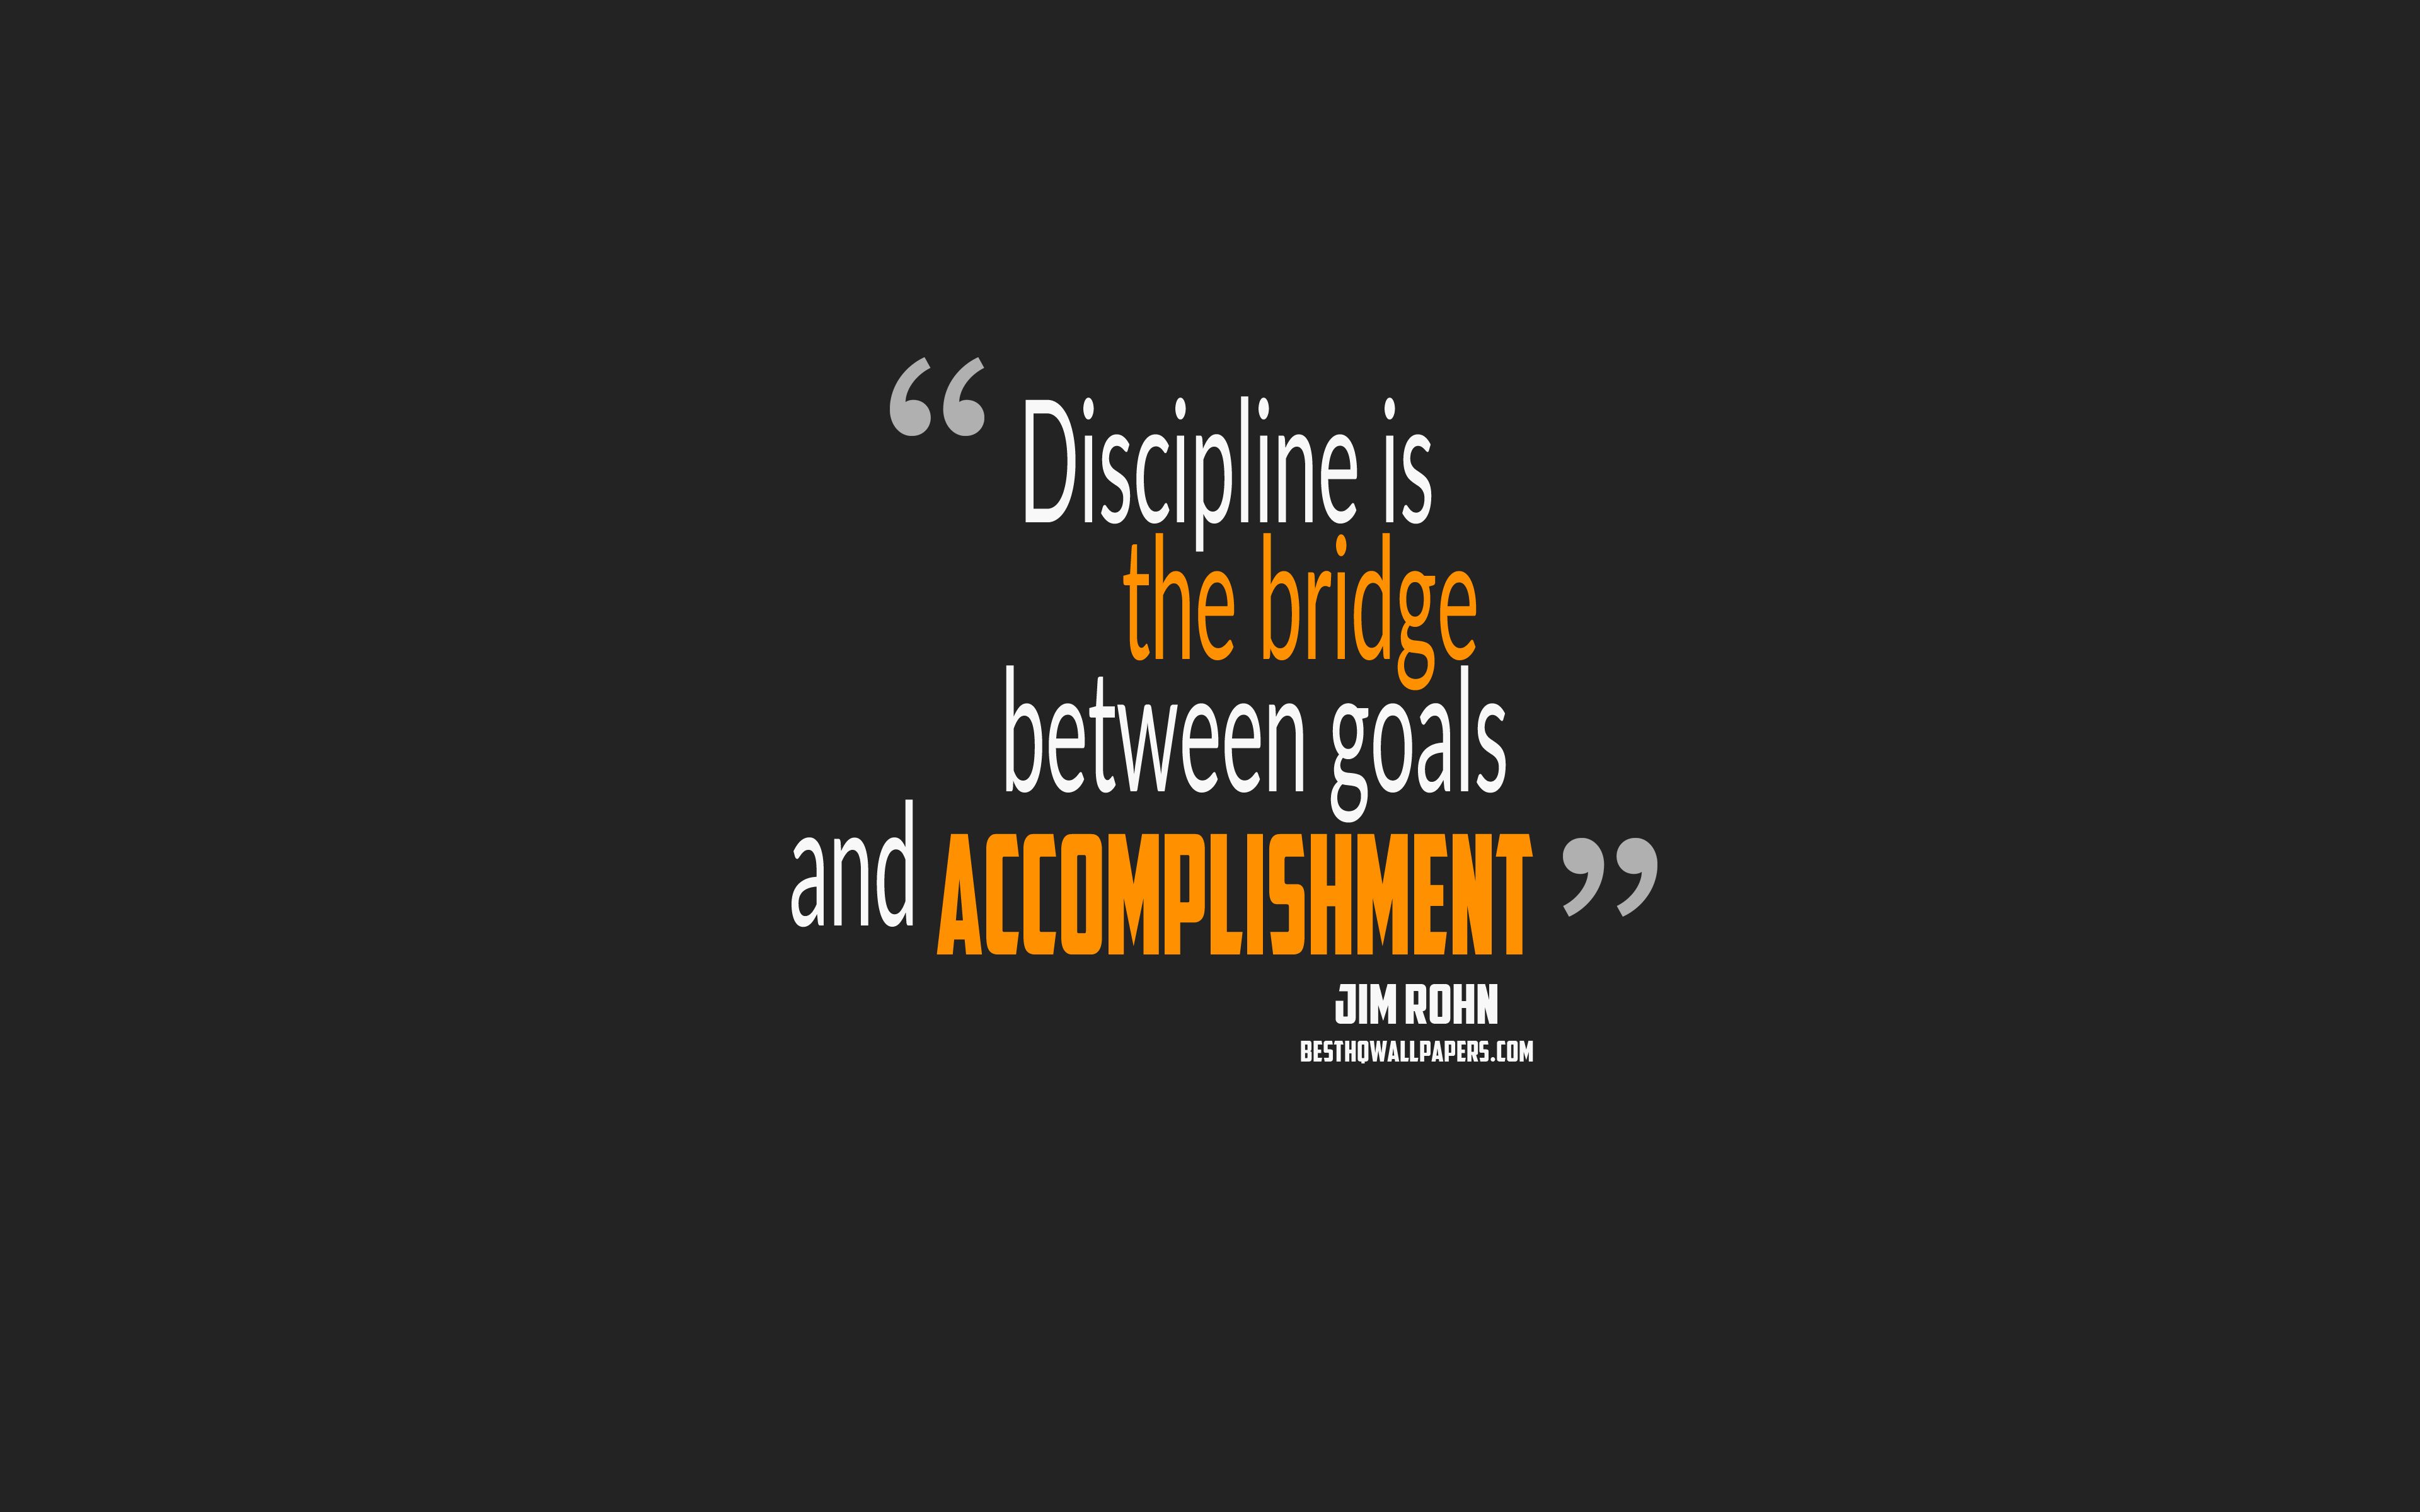 Download wallpaper Discipline is the bridge between goals